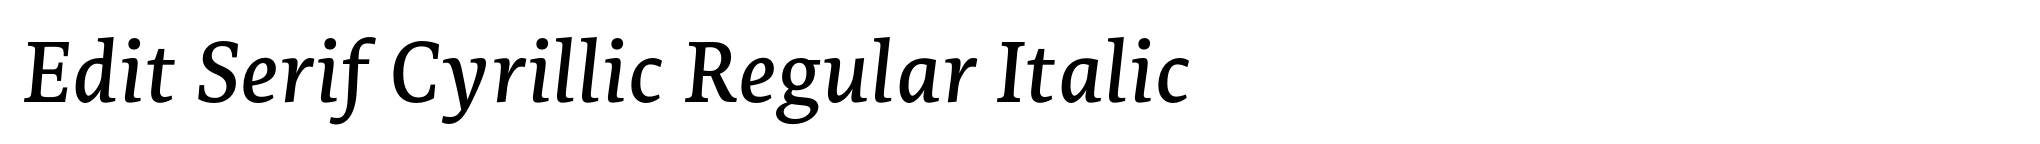 Edit Serif Cyrillic Regular Italic image